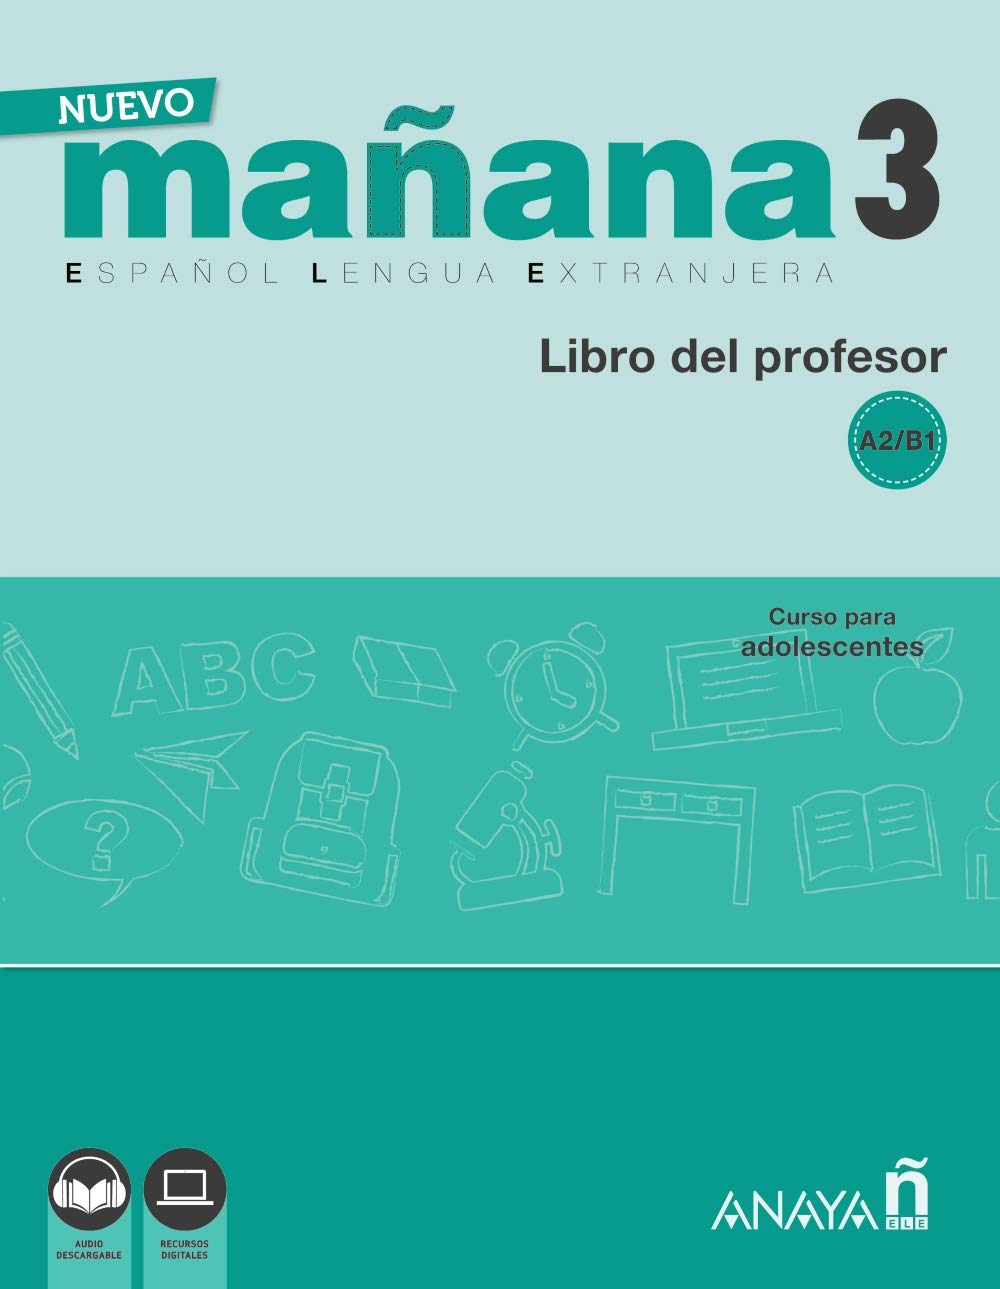 NUEVO MANANA 3 Libro del profesor + audio download